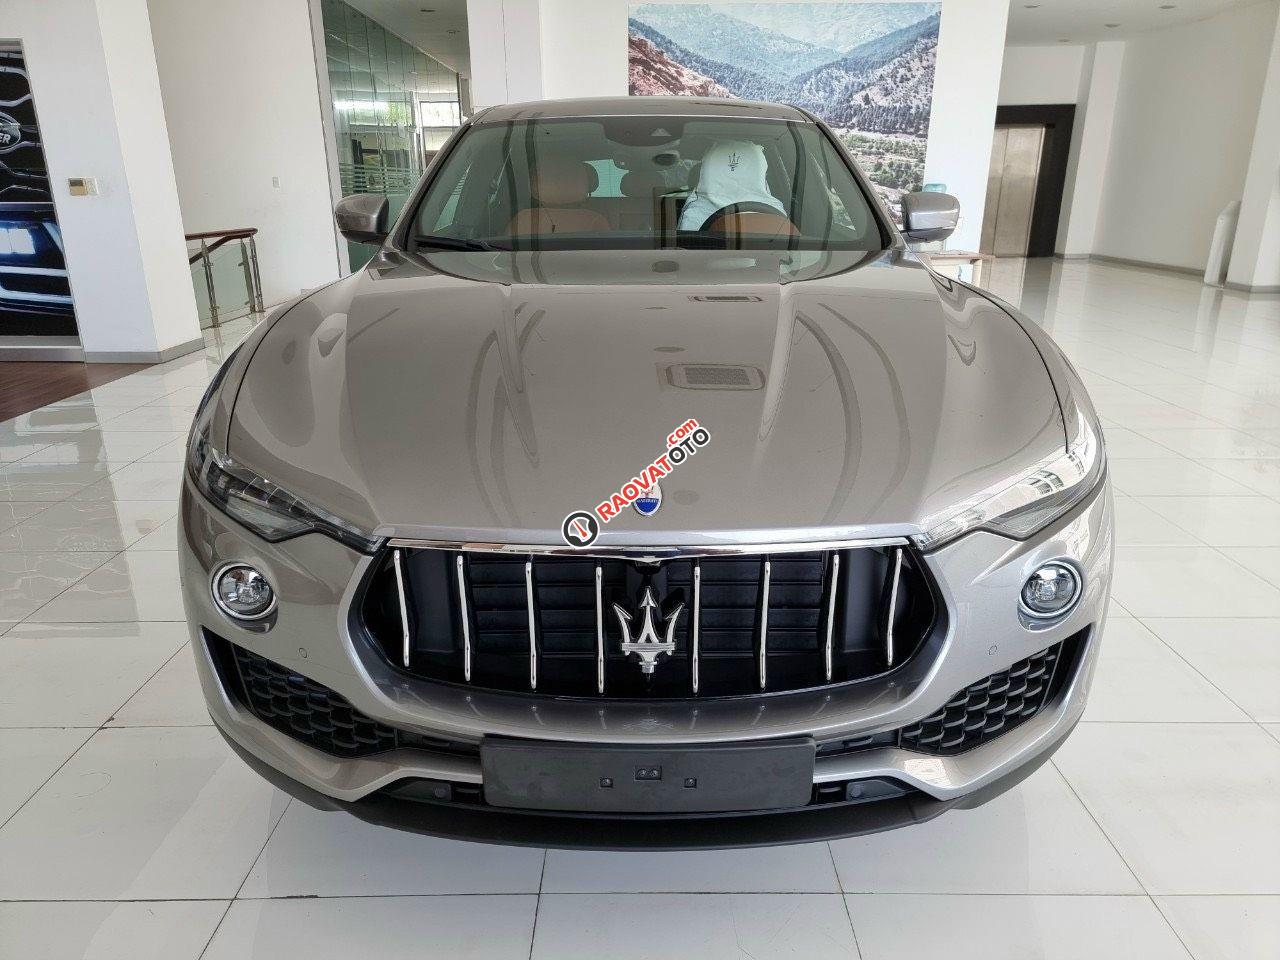 Gía xe maserati levante 2019 xe mới 100 màu xám bạc, màu bạc nội thất đen hổ trợ vay 65%-13